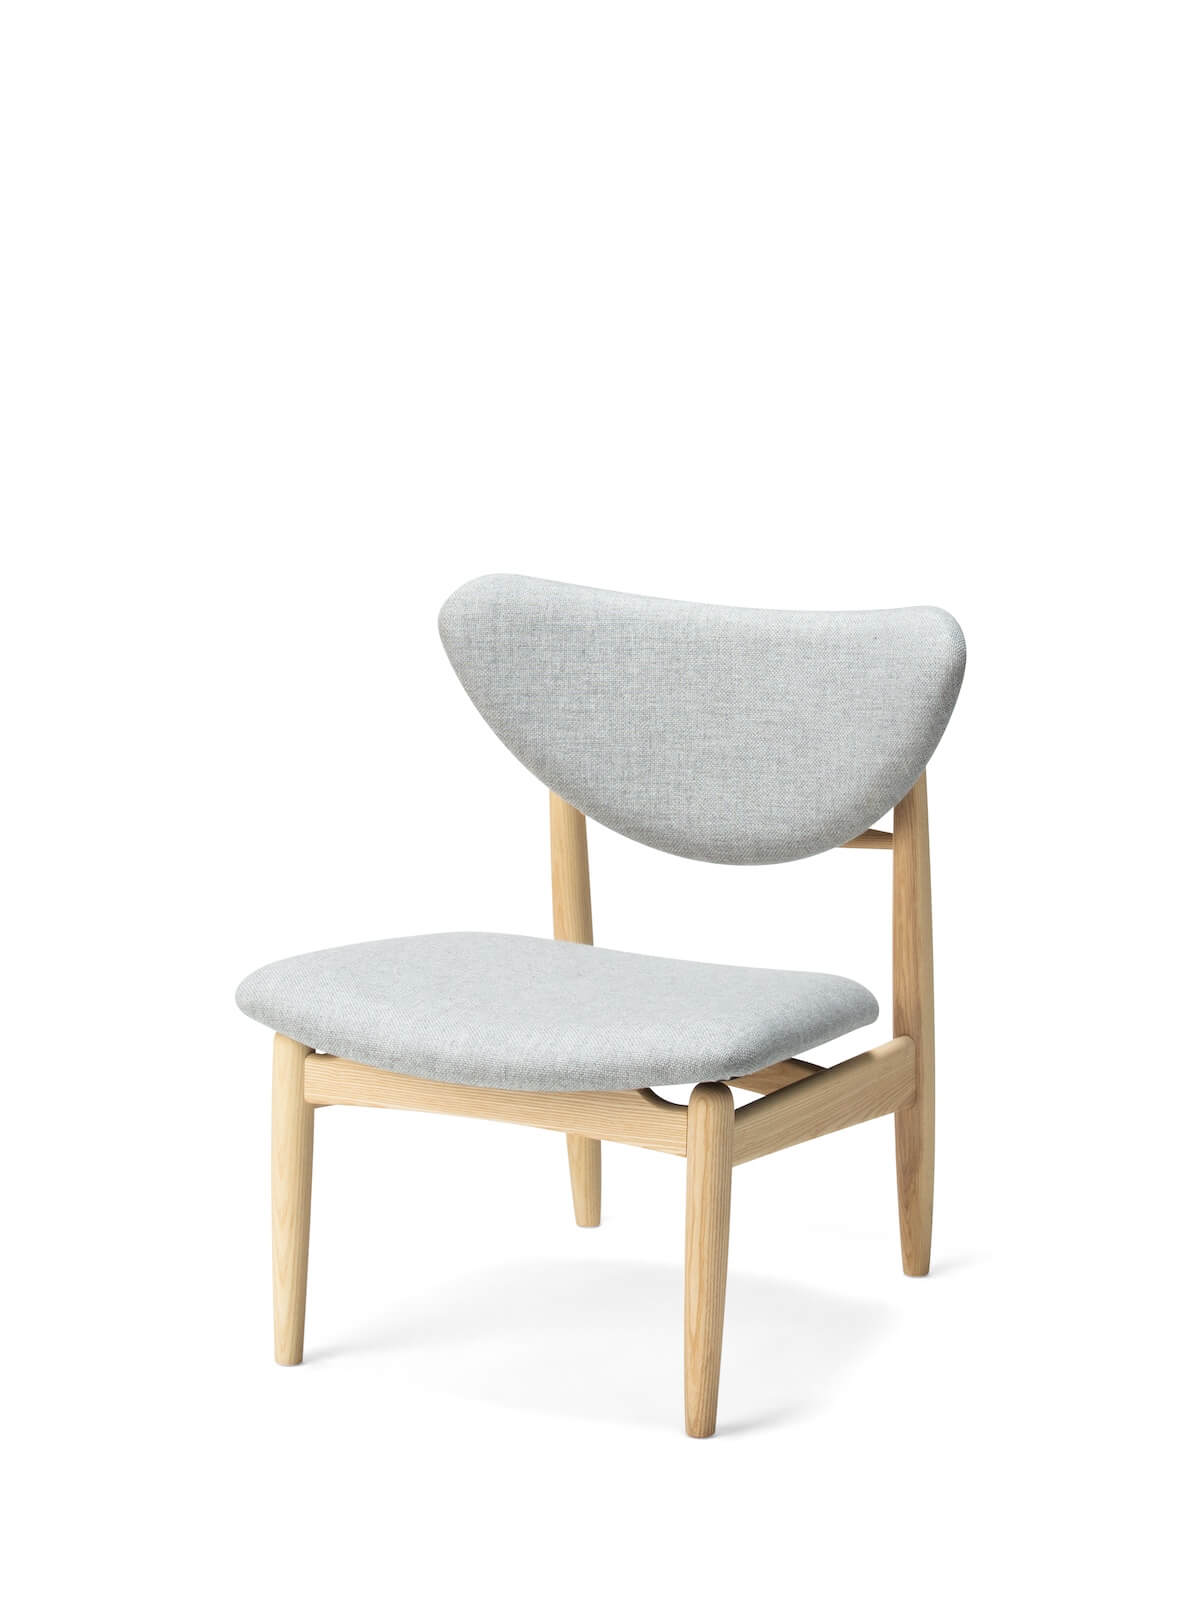 平田椅子製作所 / ピソリーノ ラウンジチェア / ナチュラルホワイト Fabric by Maharam